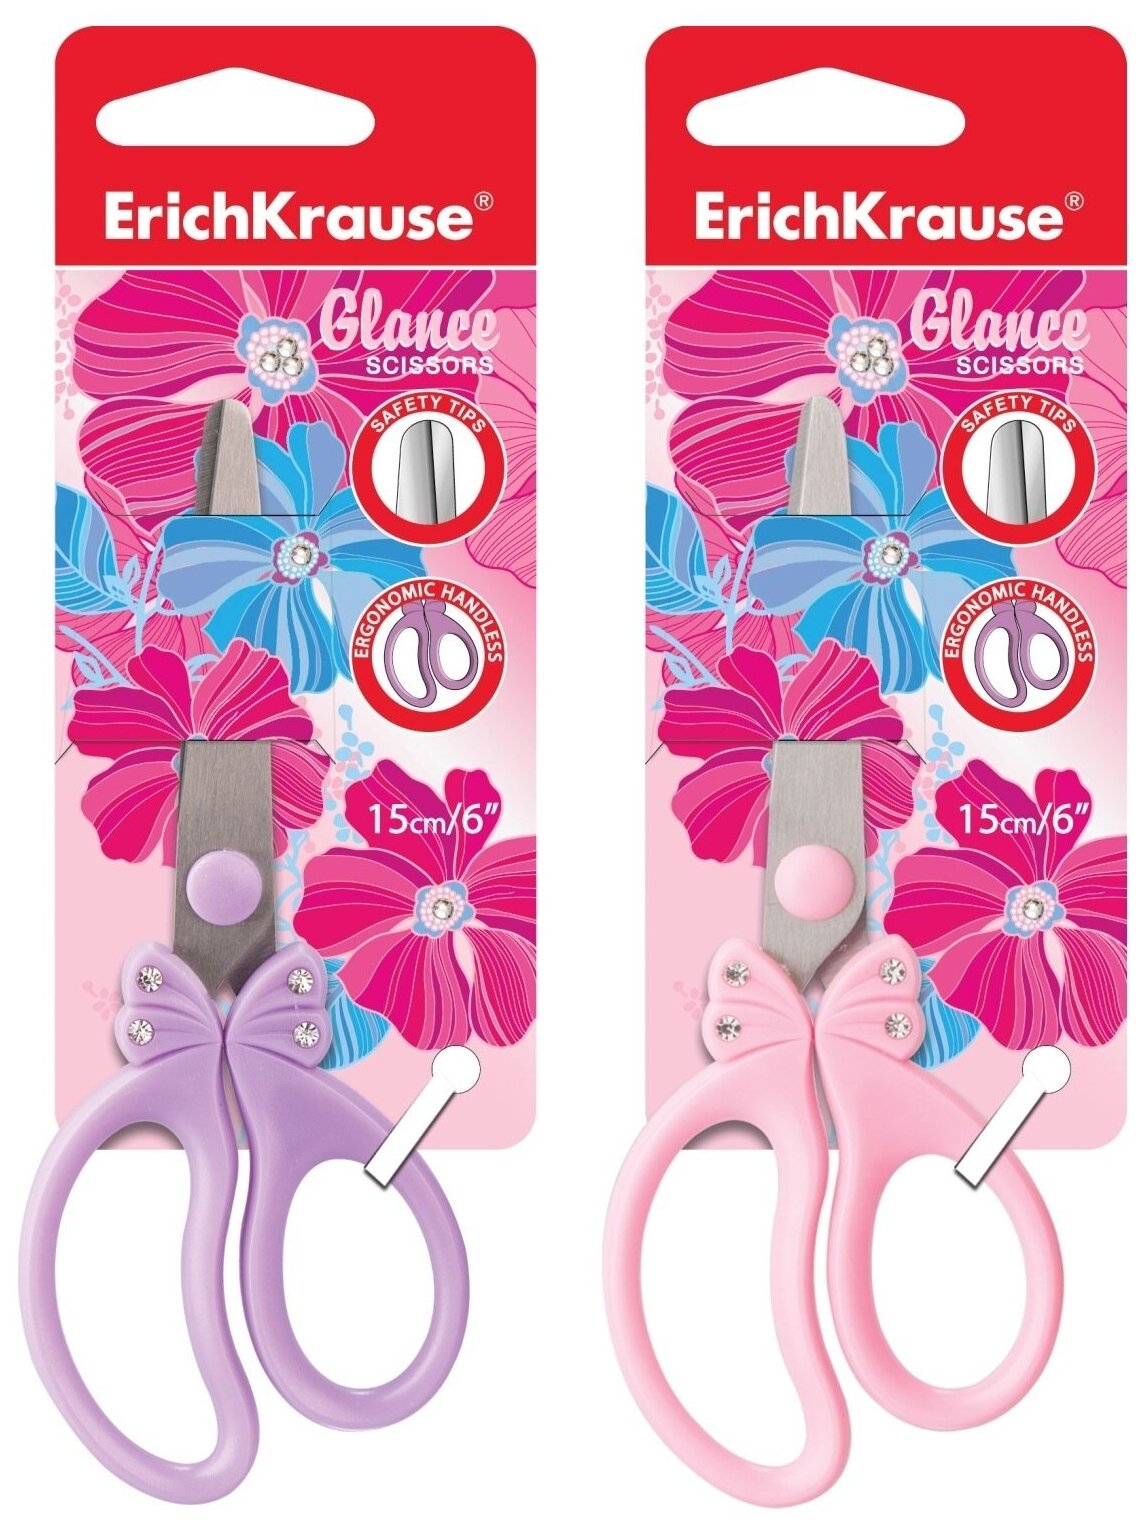 Ножницы ErichKrause® Glance со стразами 15см в блистере по 1 шт.